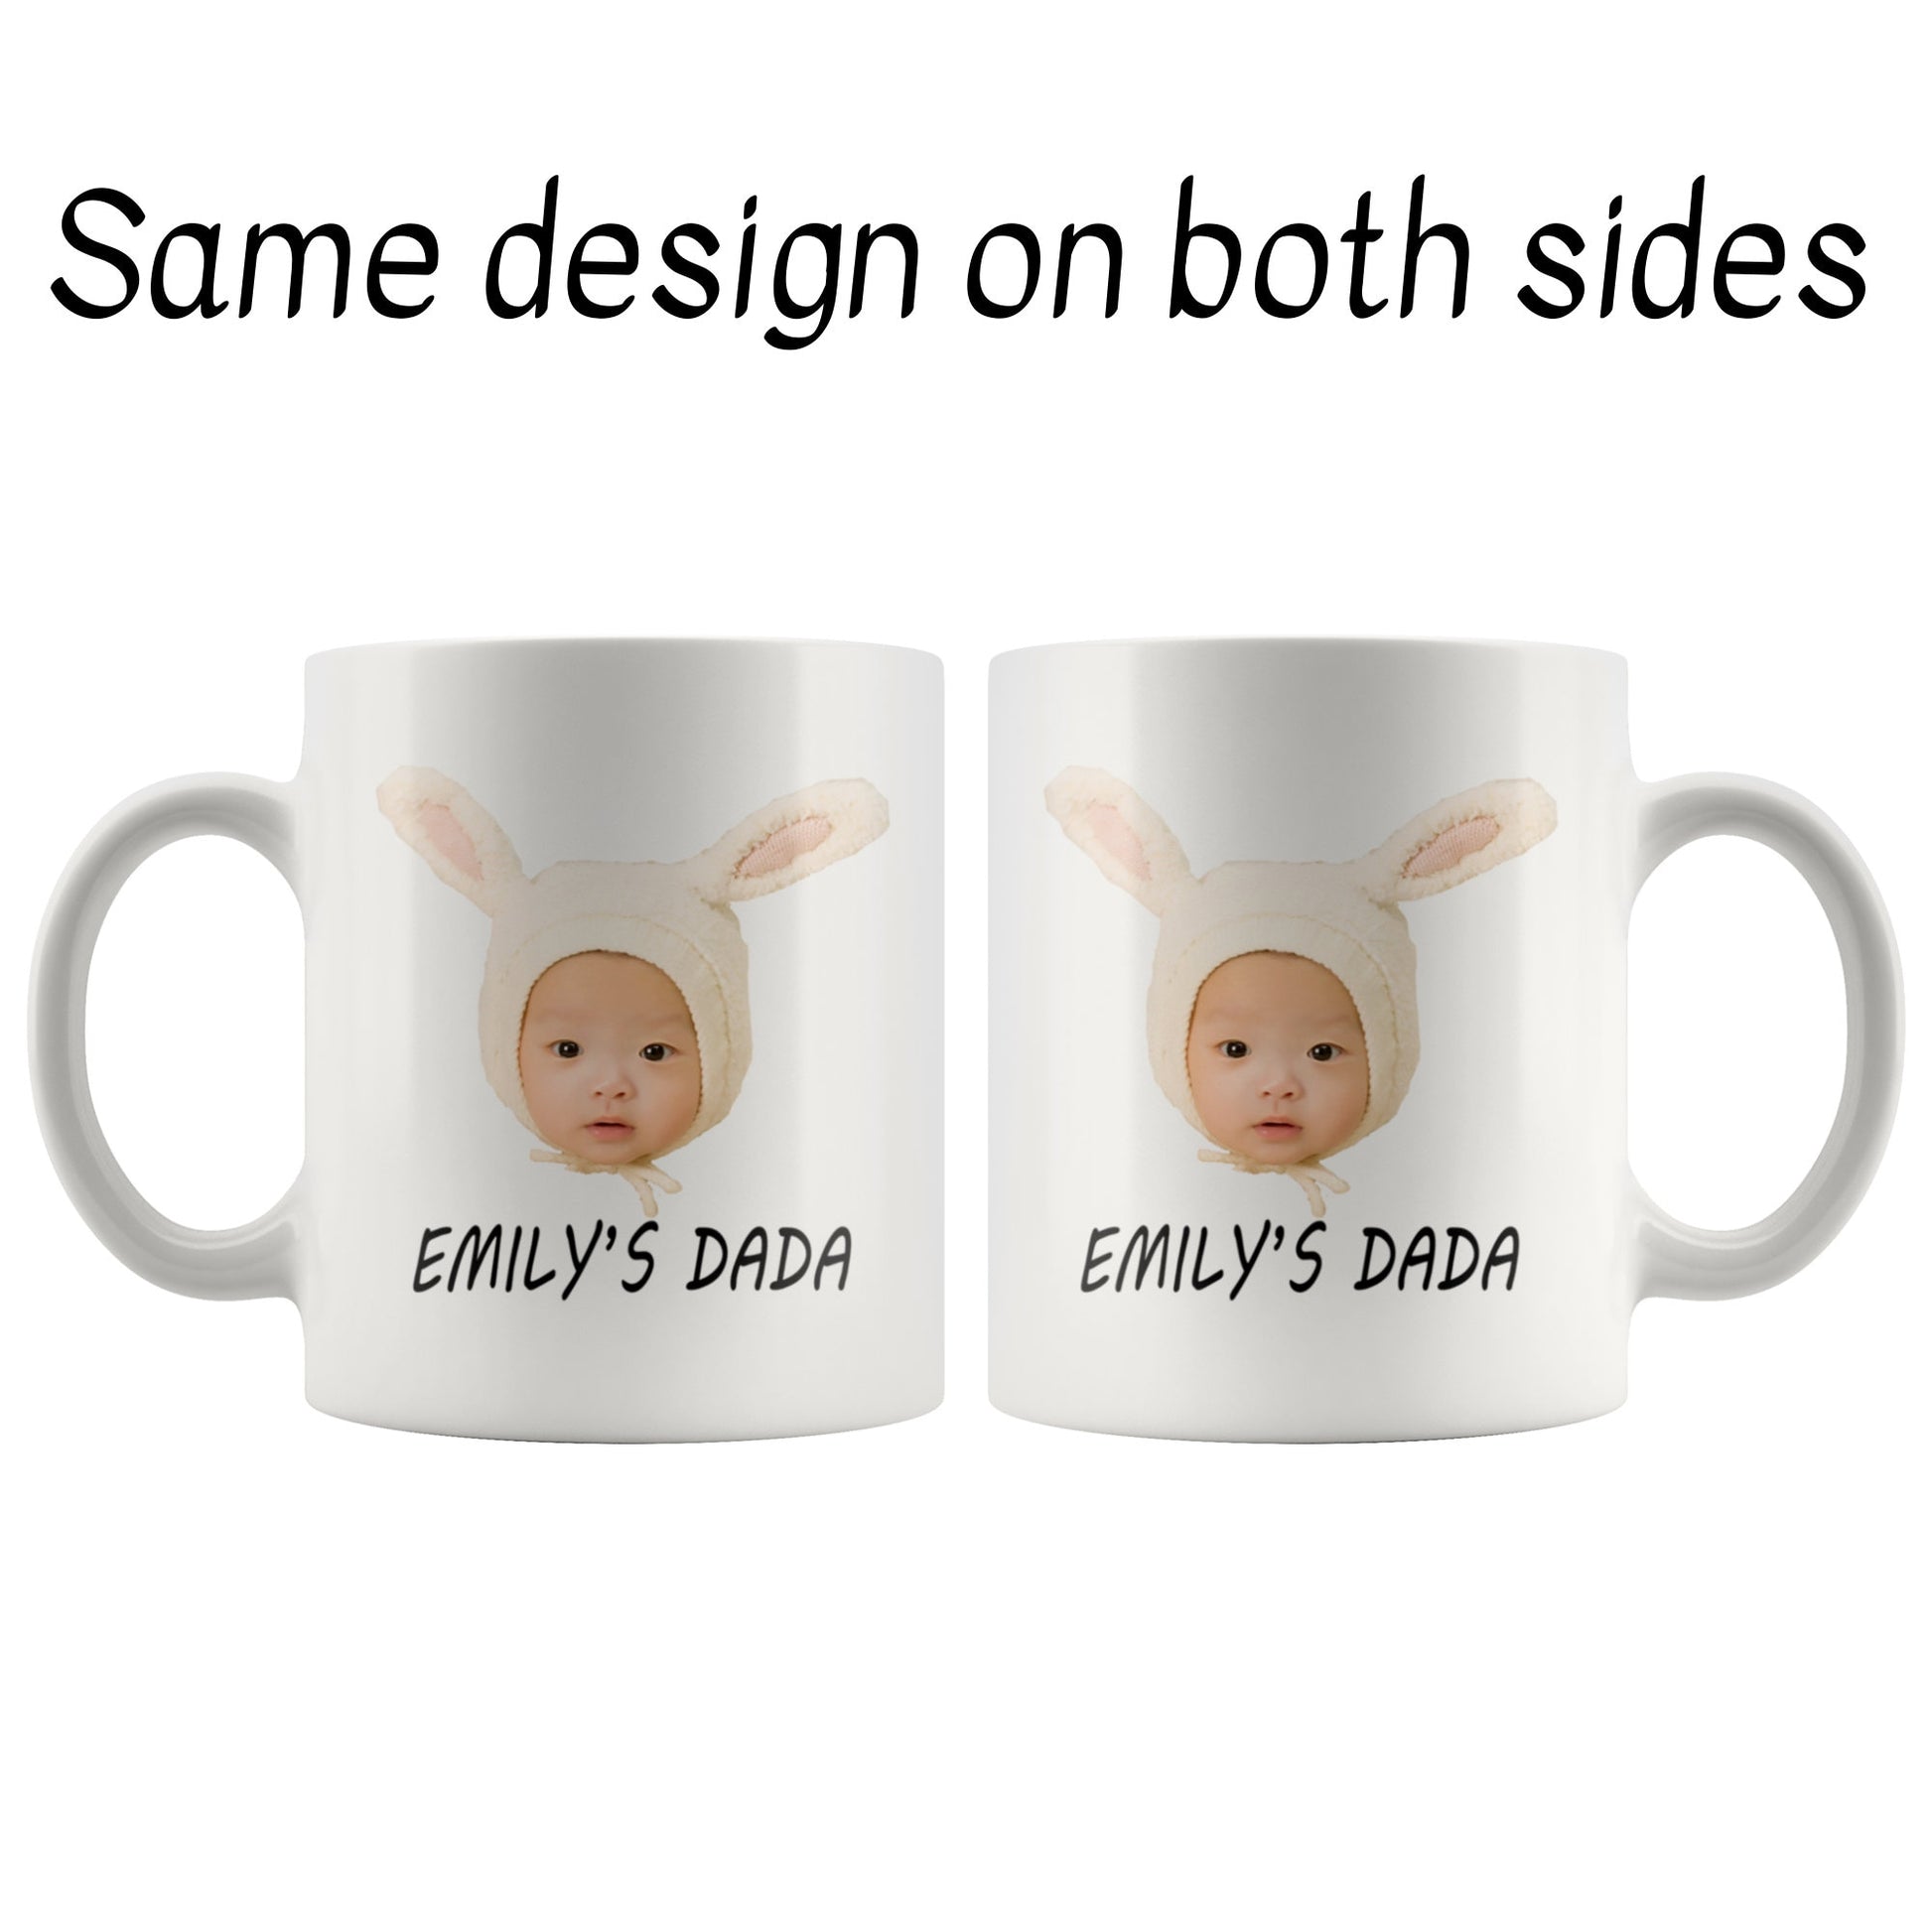 Baby Photo Mug pciture on both sides